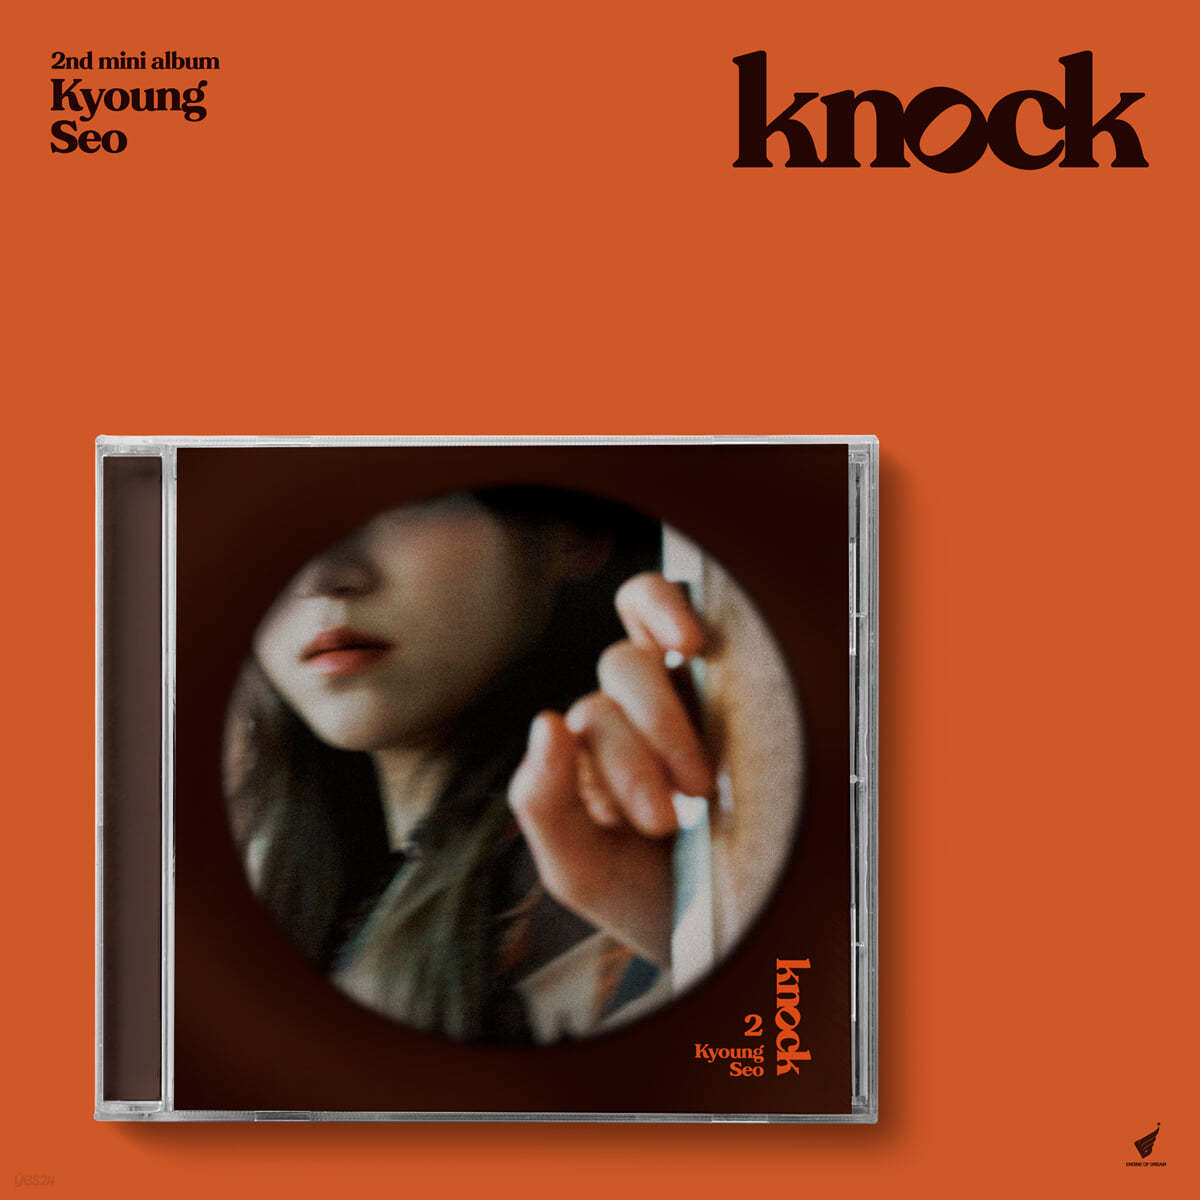 경서 - 미니앨범 2집 : Knock